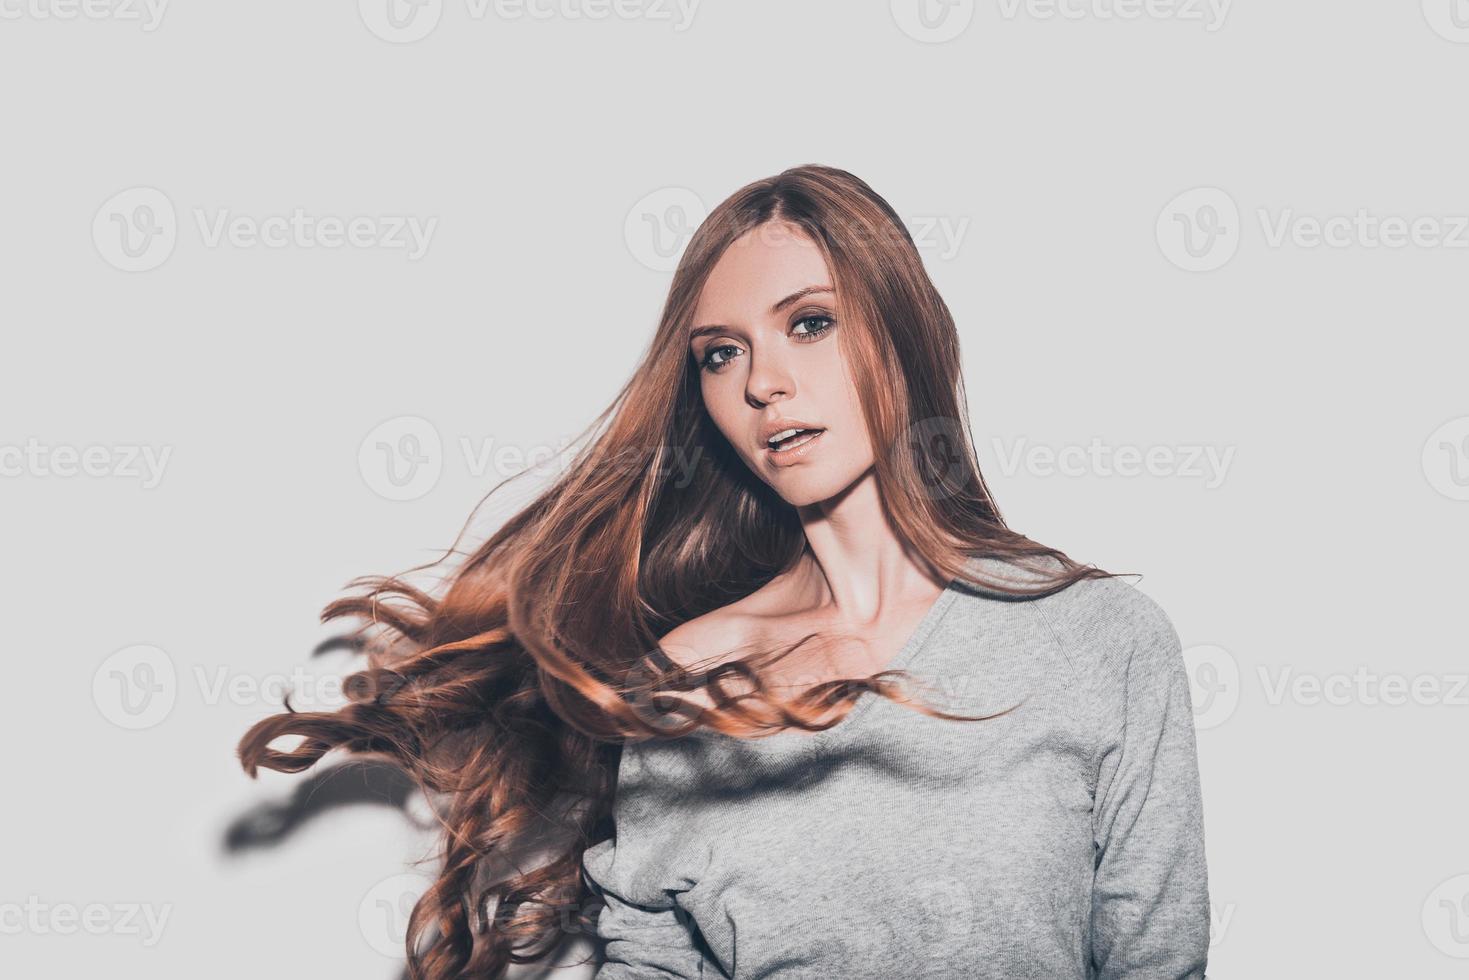 cheveux en mouvement. portrait d'une jeune femme séduisante aux cheveux ébouriffés regardant la caméra en se tenant debout sur fond gris photo